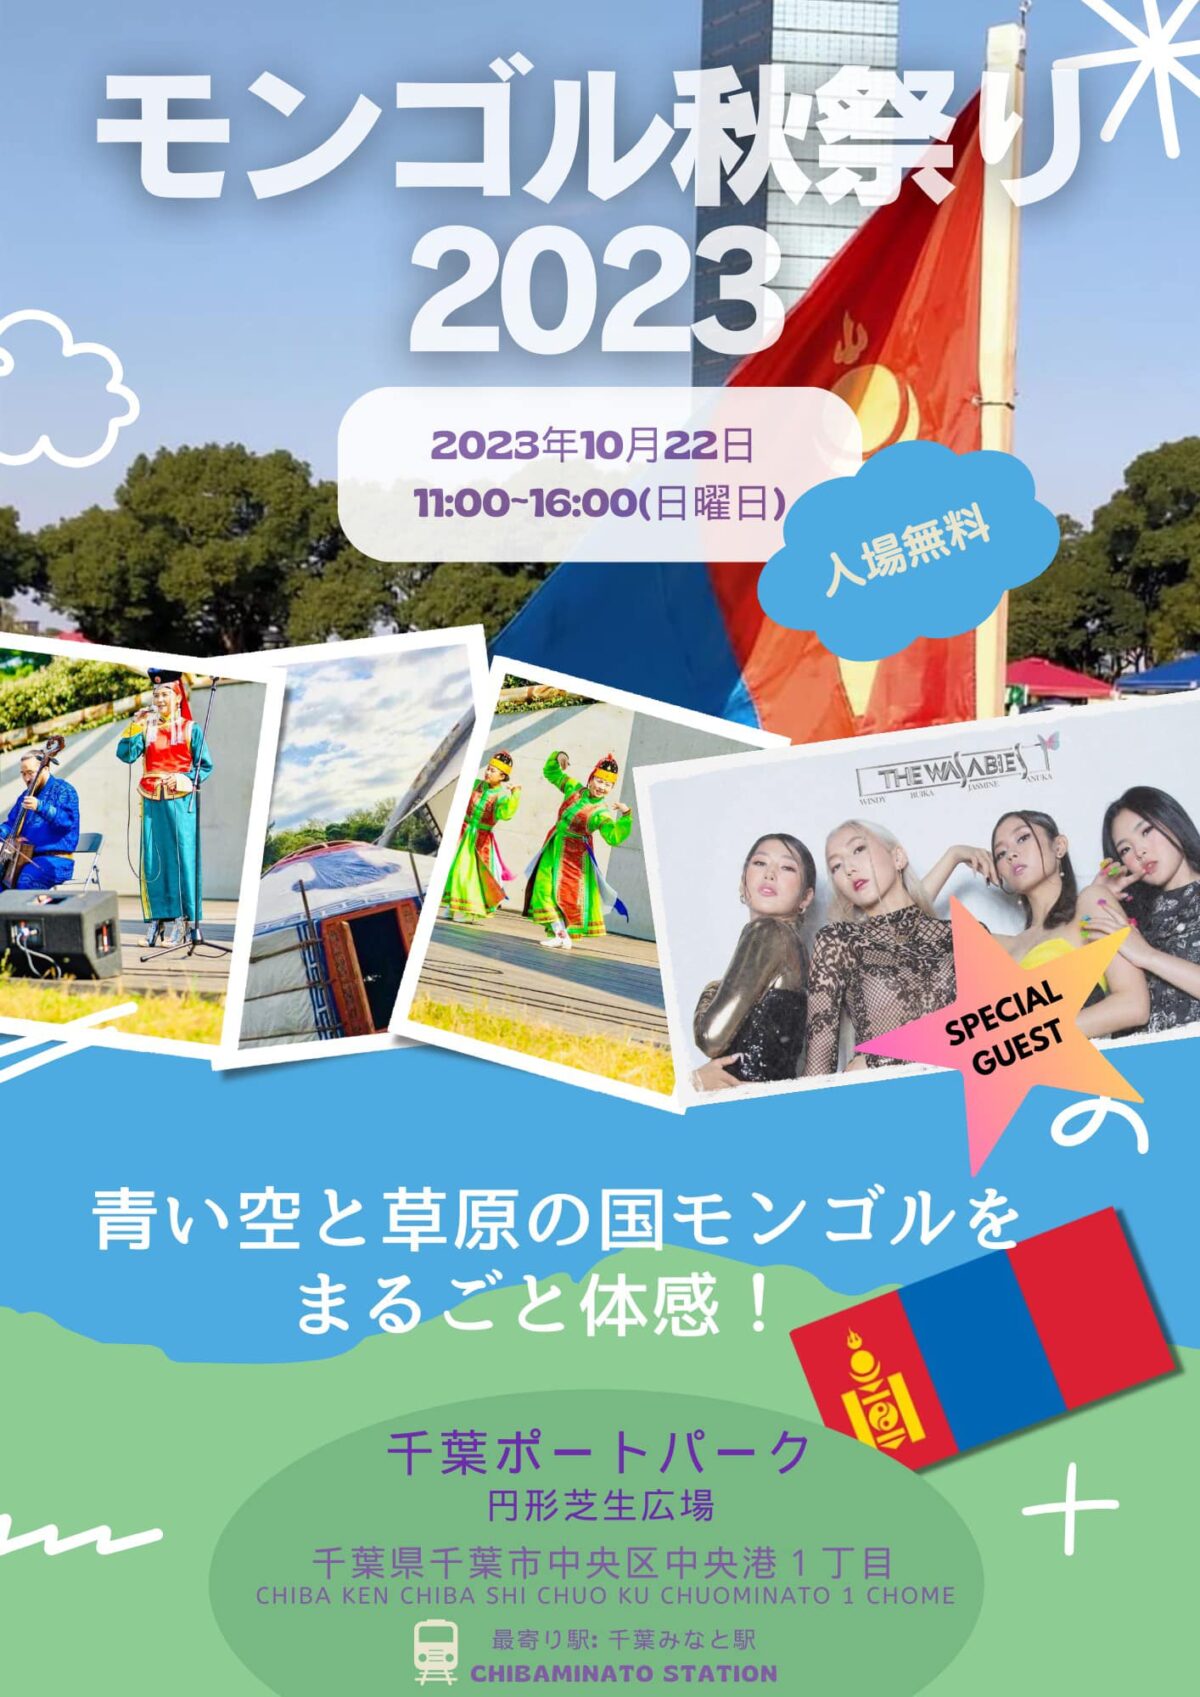 2023年10月22日(日) モンゴル秋祭り 2023 @ 千葉ポートパーク 円形芝生広場